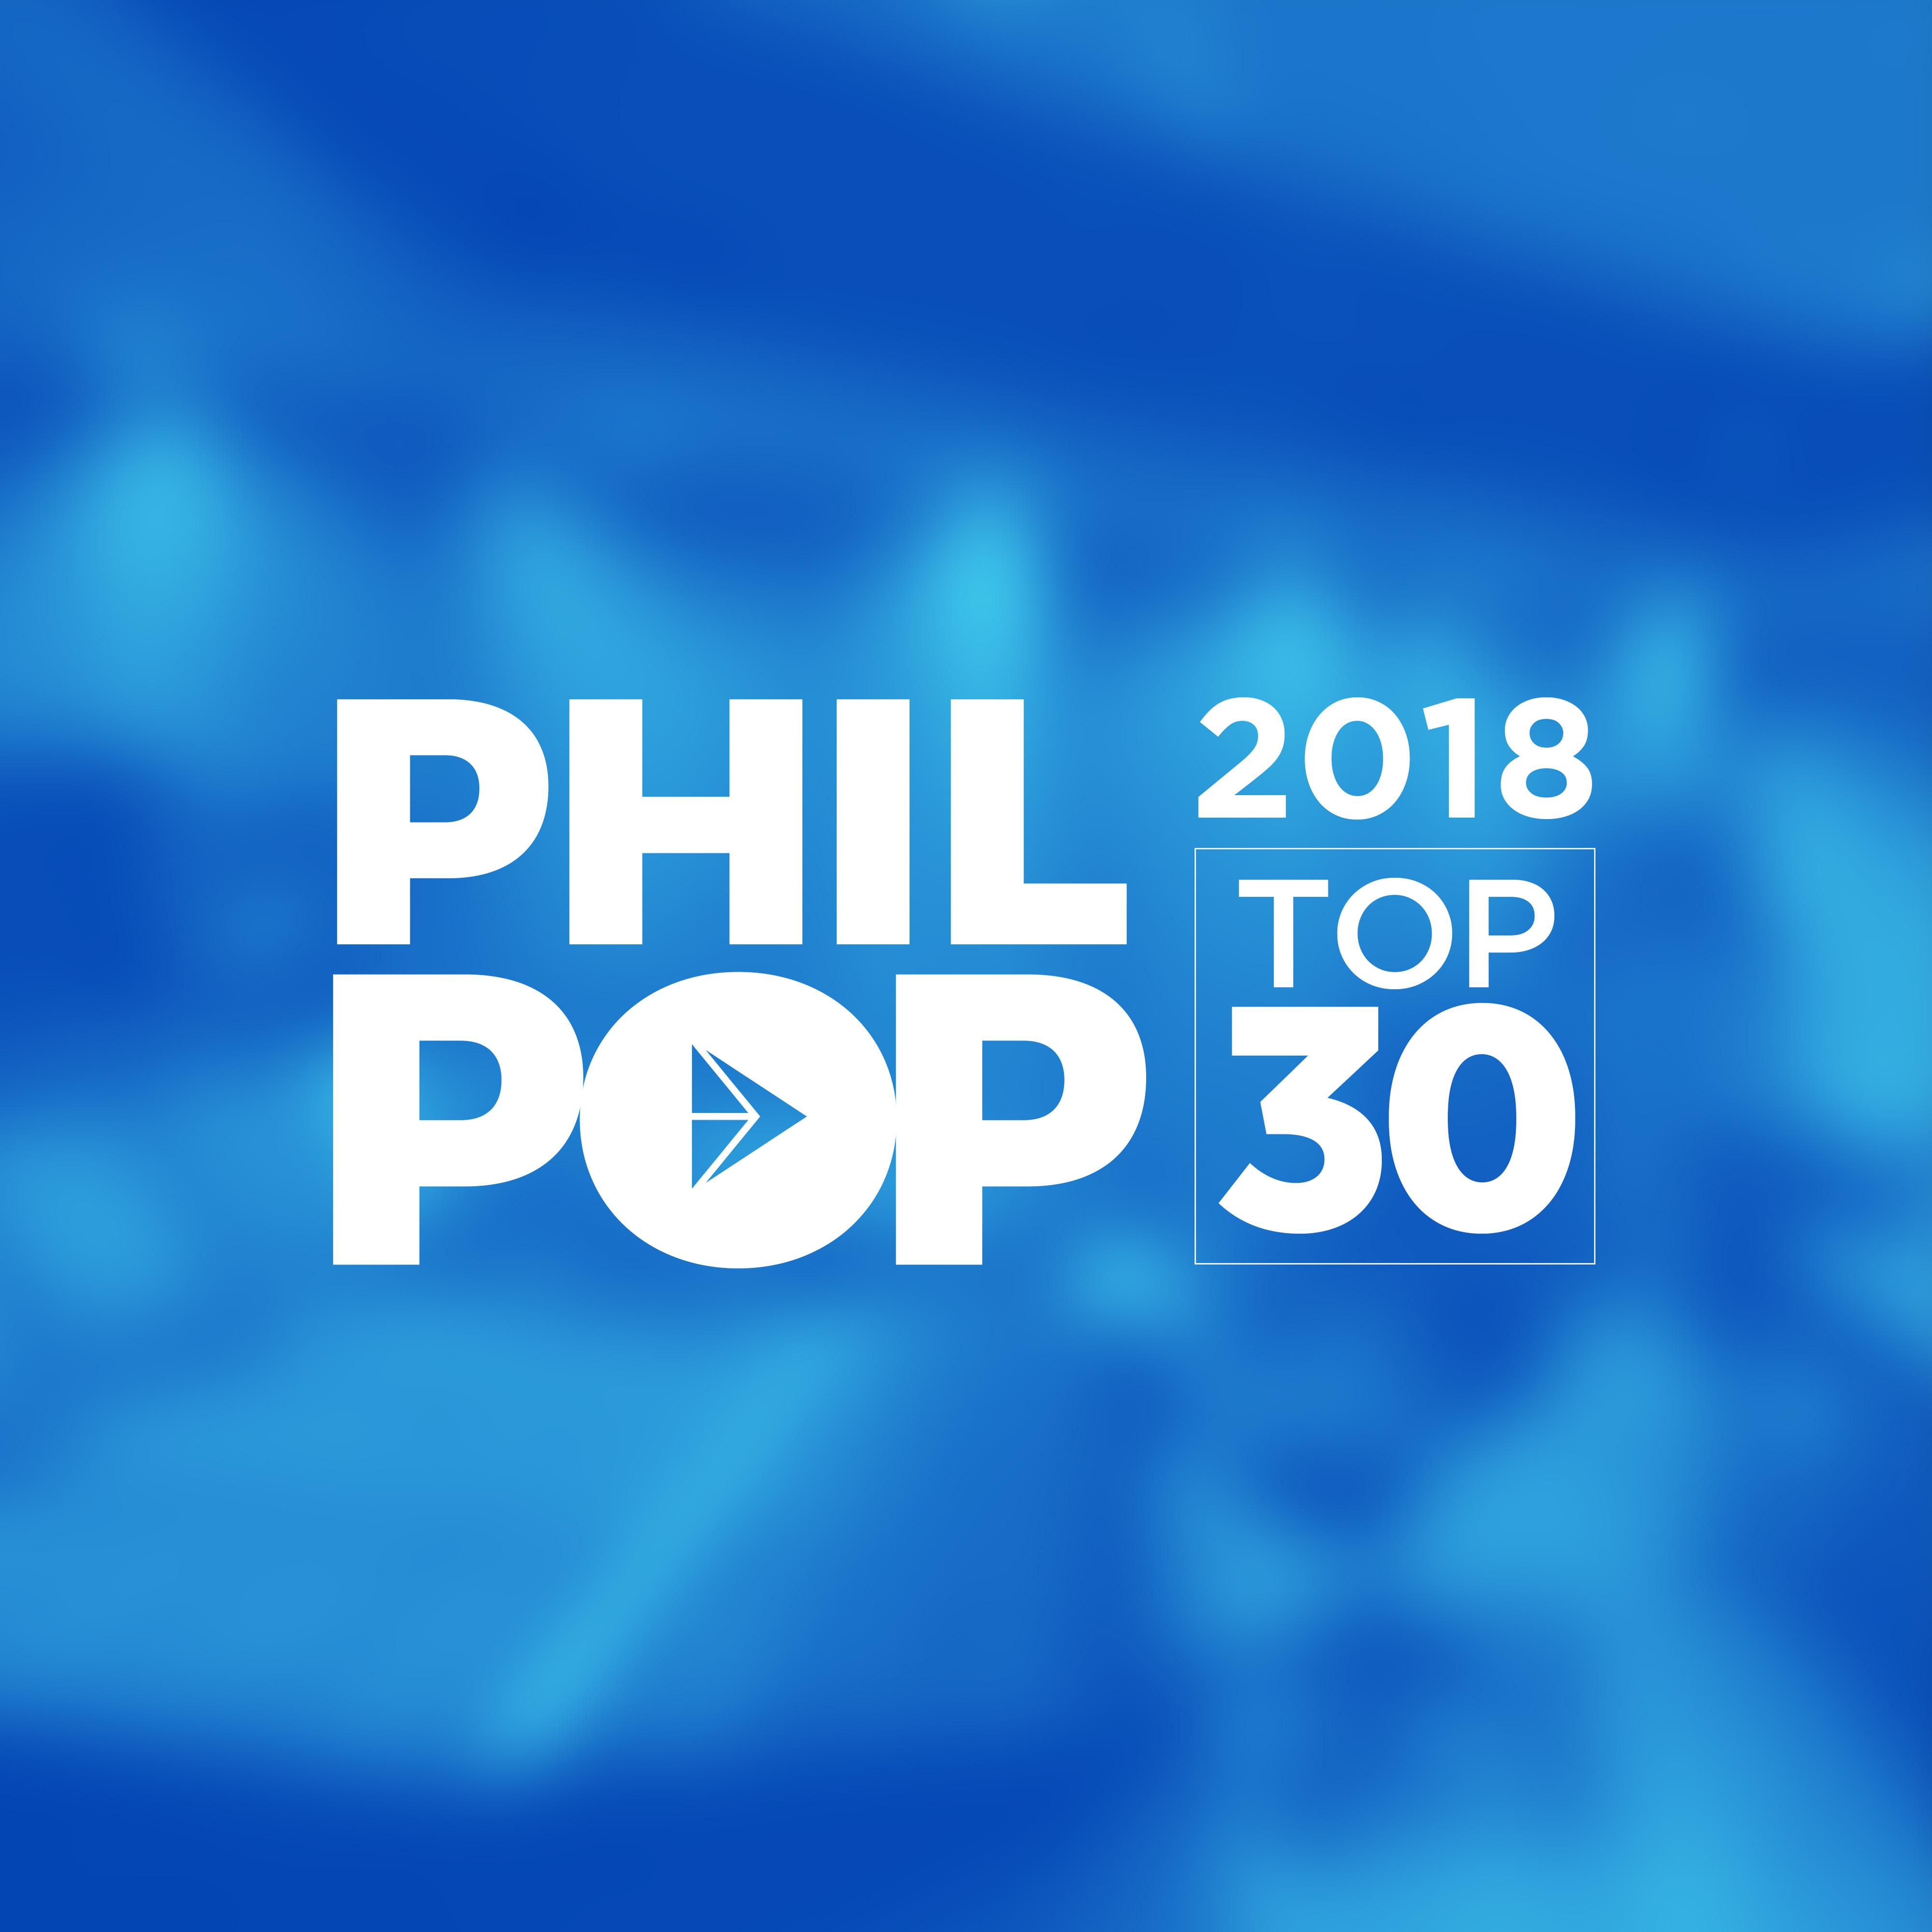 PhilPop 2018: Top 30